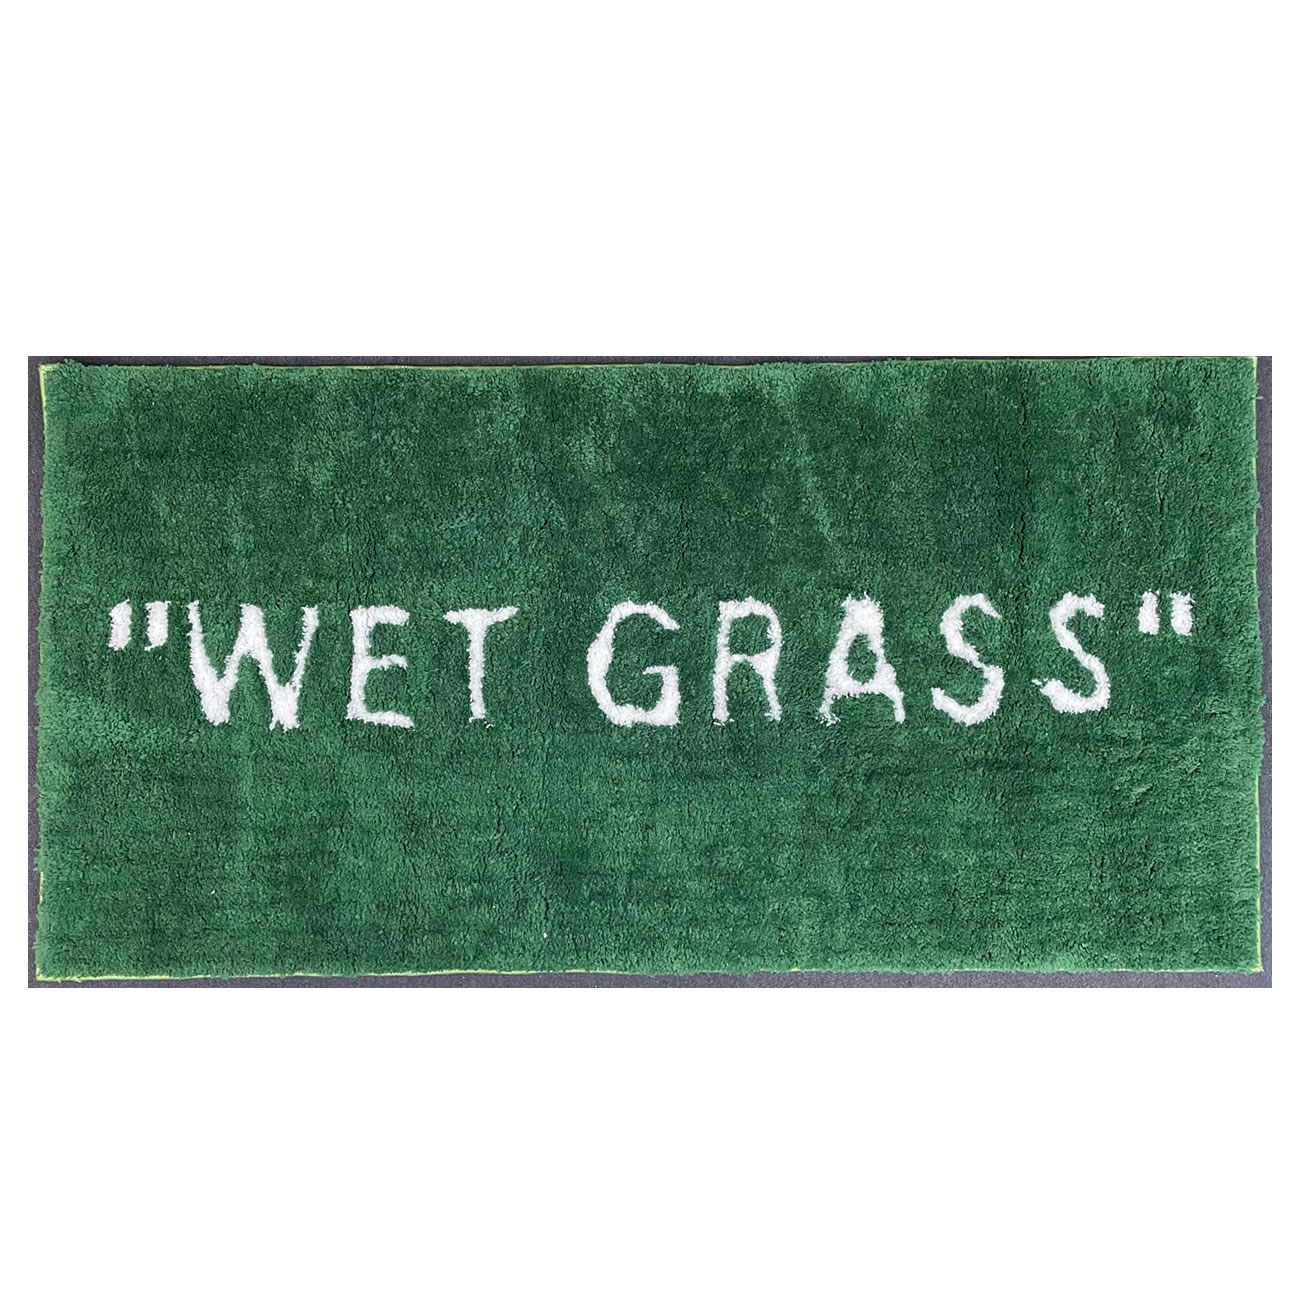 Wet Grass - newkick.org